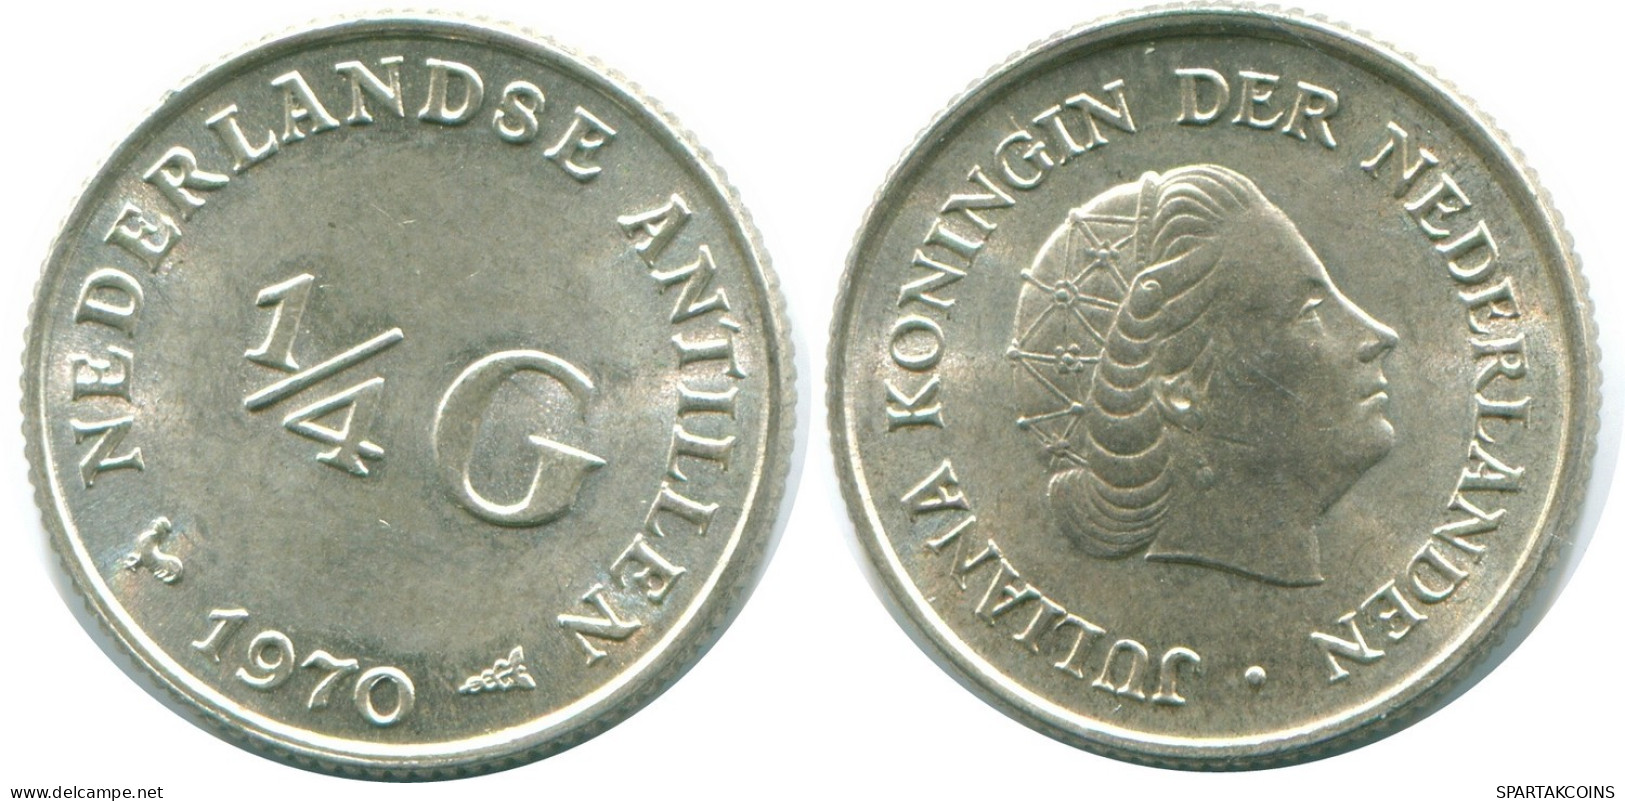 1/4 GULDEN 1970 NIEDERLÄNDISCHE ANTILLEN SILBER Koloniale Münze #NL11640.4.D.A - Antilles Néerlandaises